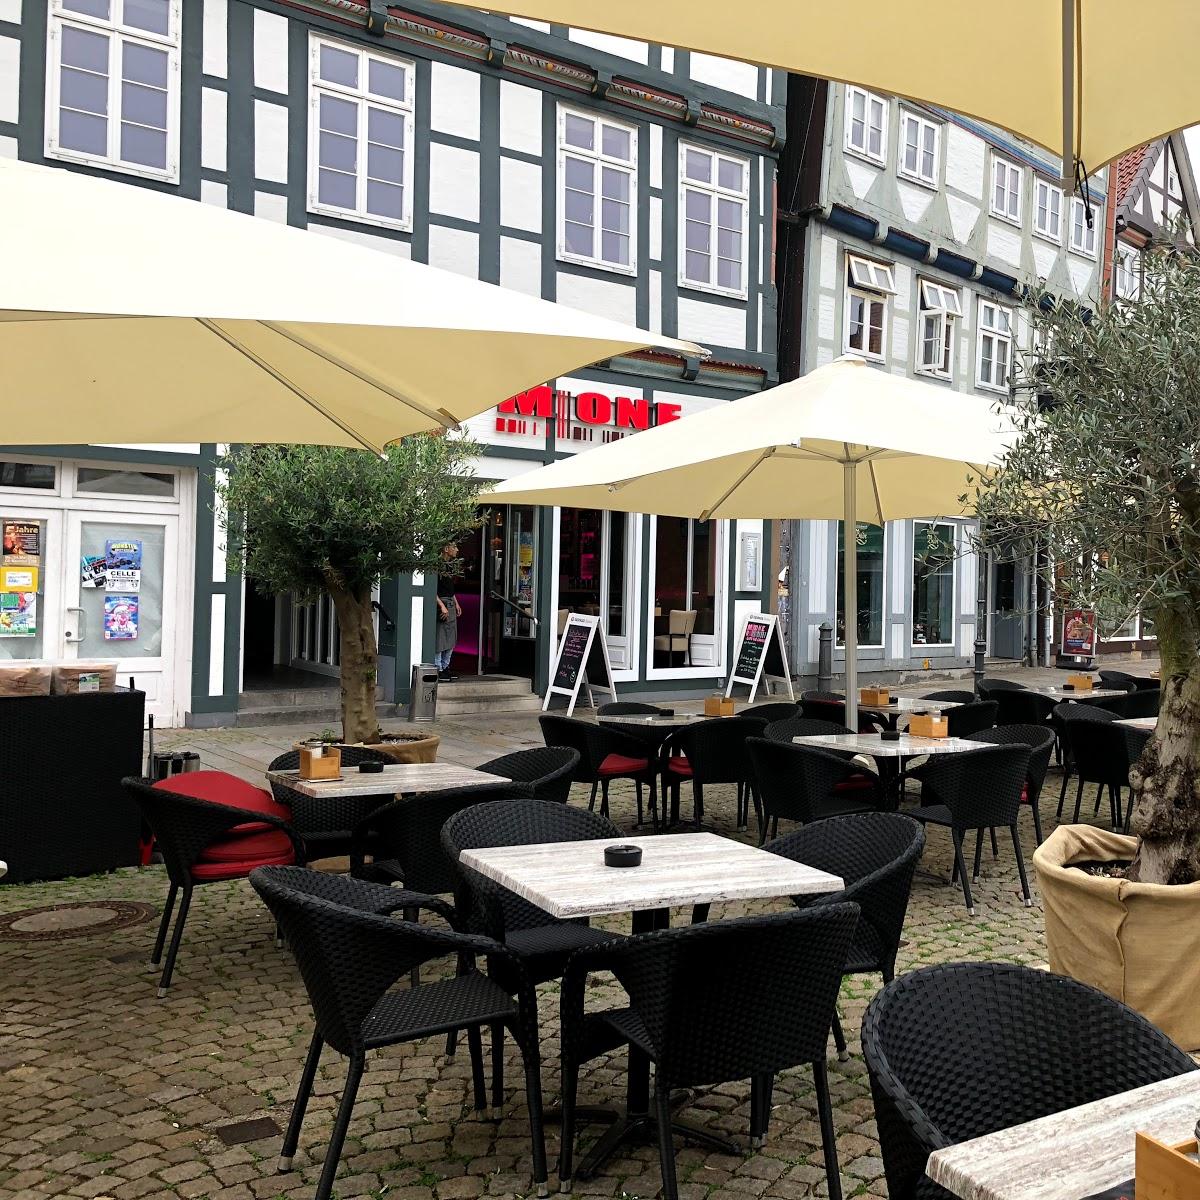 Restaurant "Martas Restaurant" in  Celle